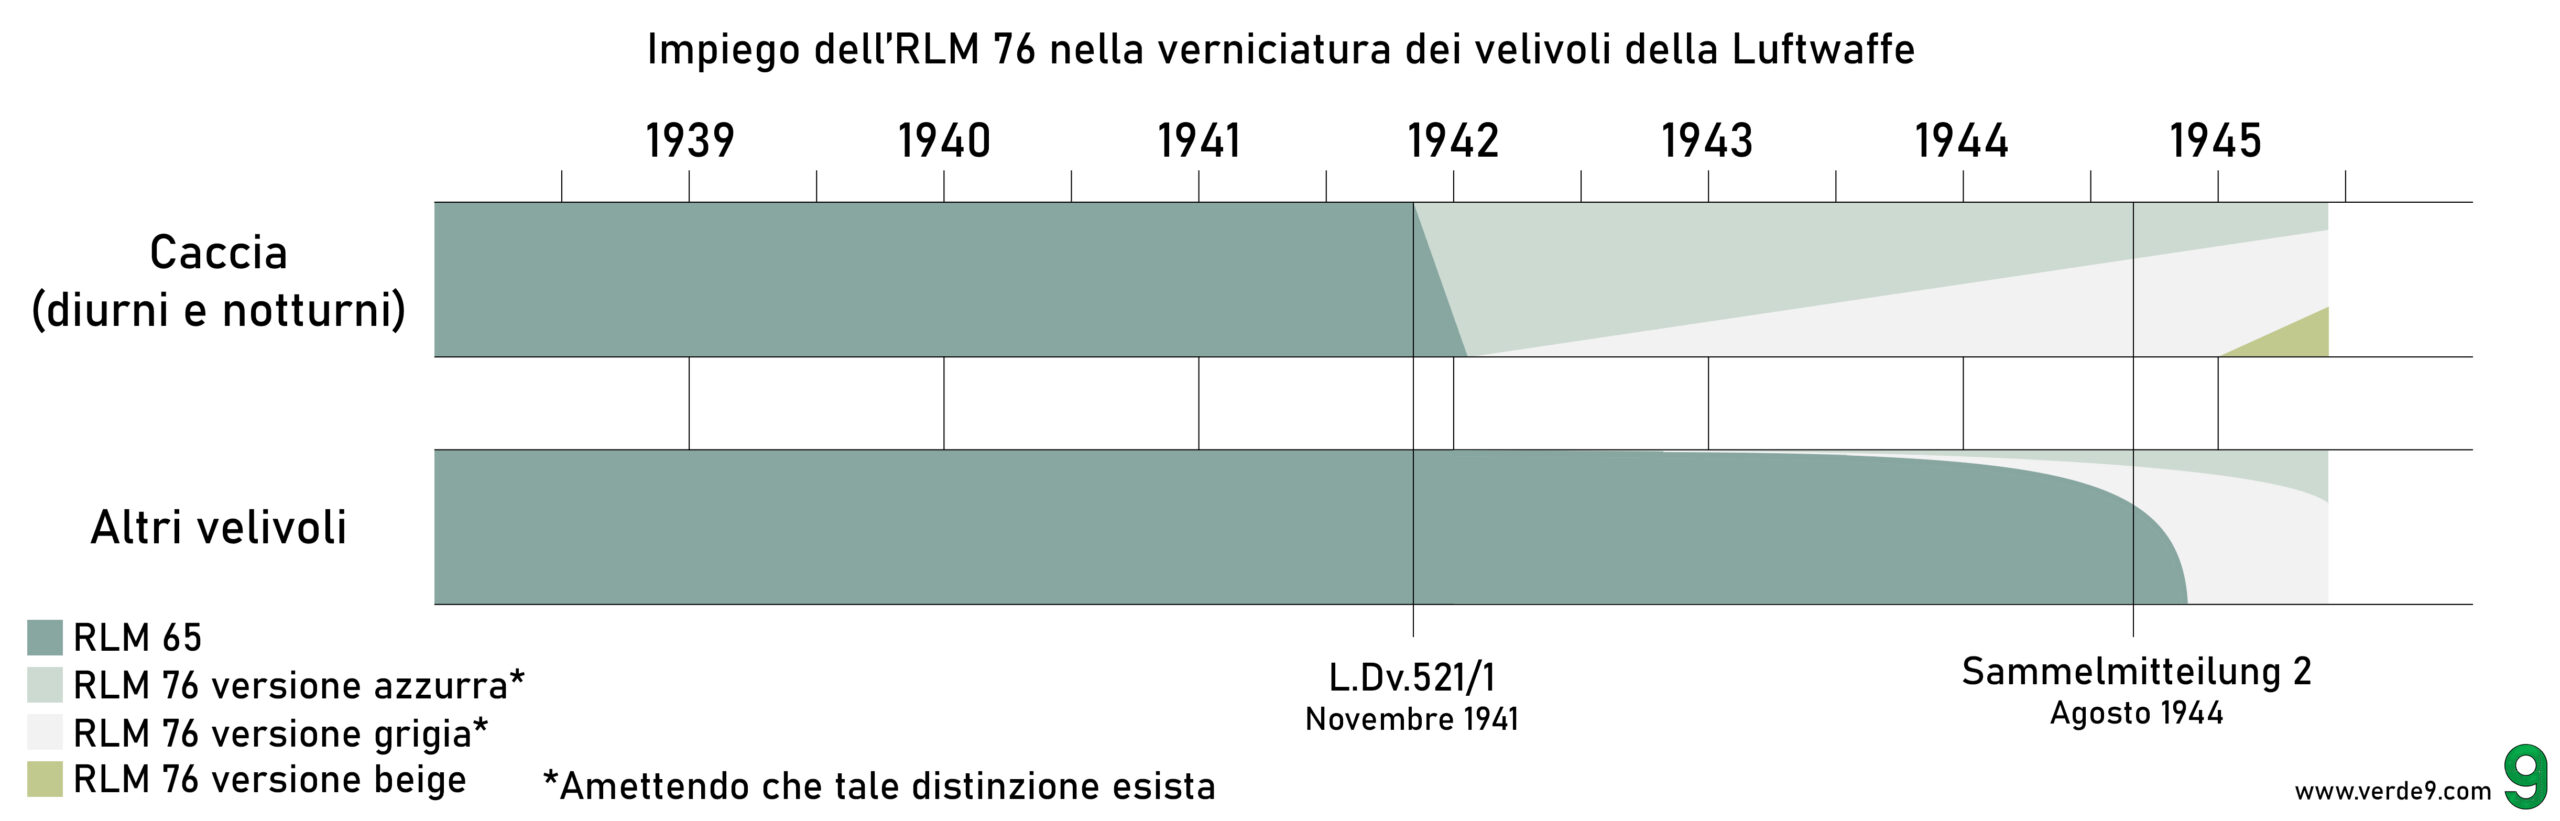 Questo diagramma mostra l'impiego dell'RLM 76 durante il conflitto. I due principali documenti che ne hanno regolato la messa in uso sono qui evidenziati, considerandone la completa messa in atto con un periodo di circa 3 mesi.